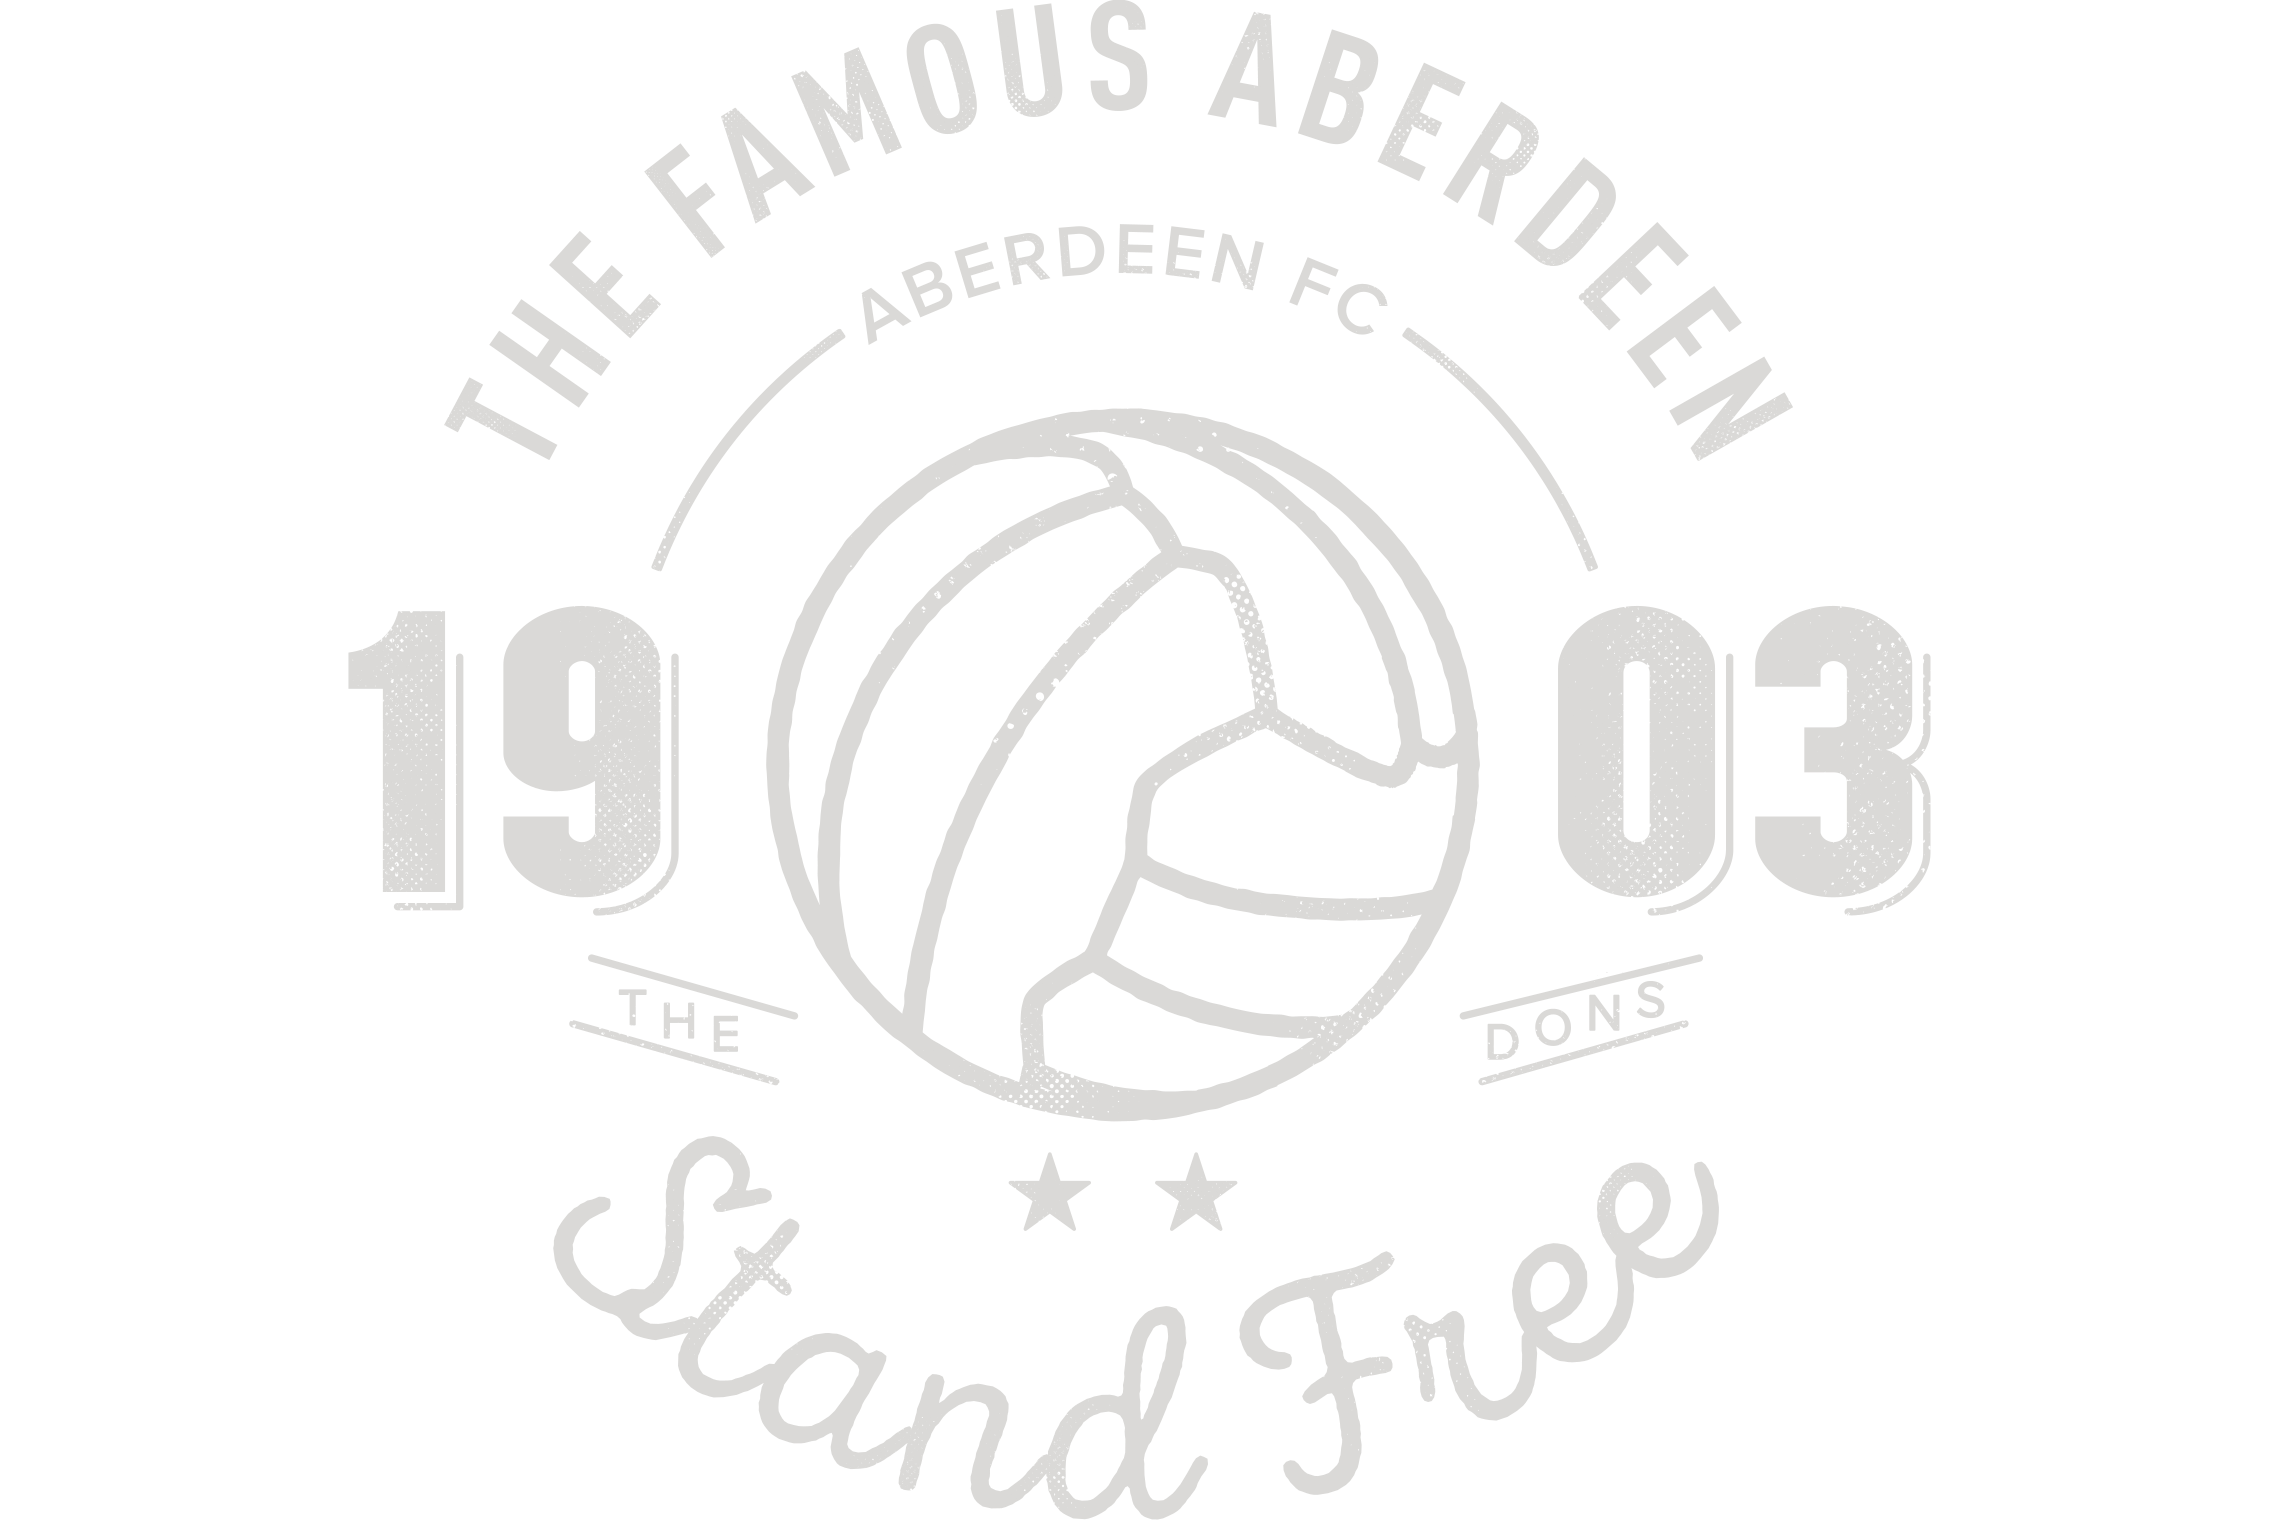 Aberdeen FC merchandise